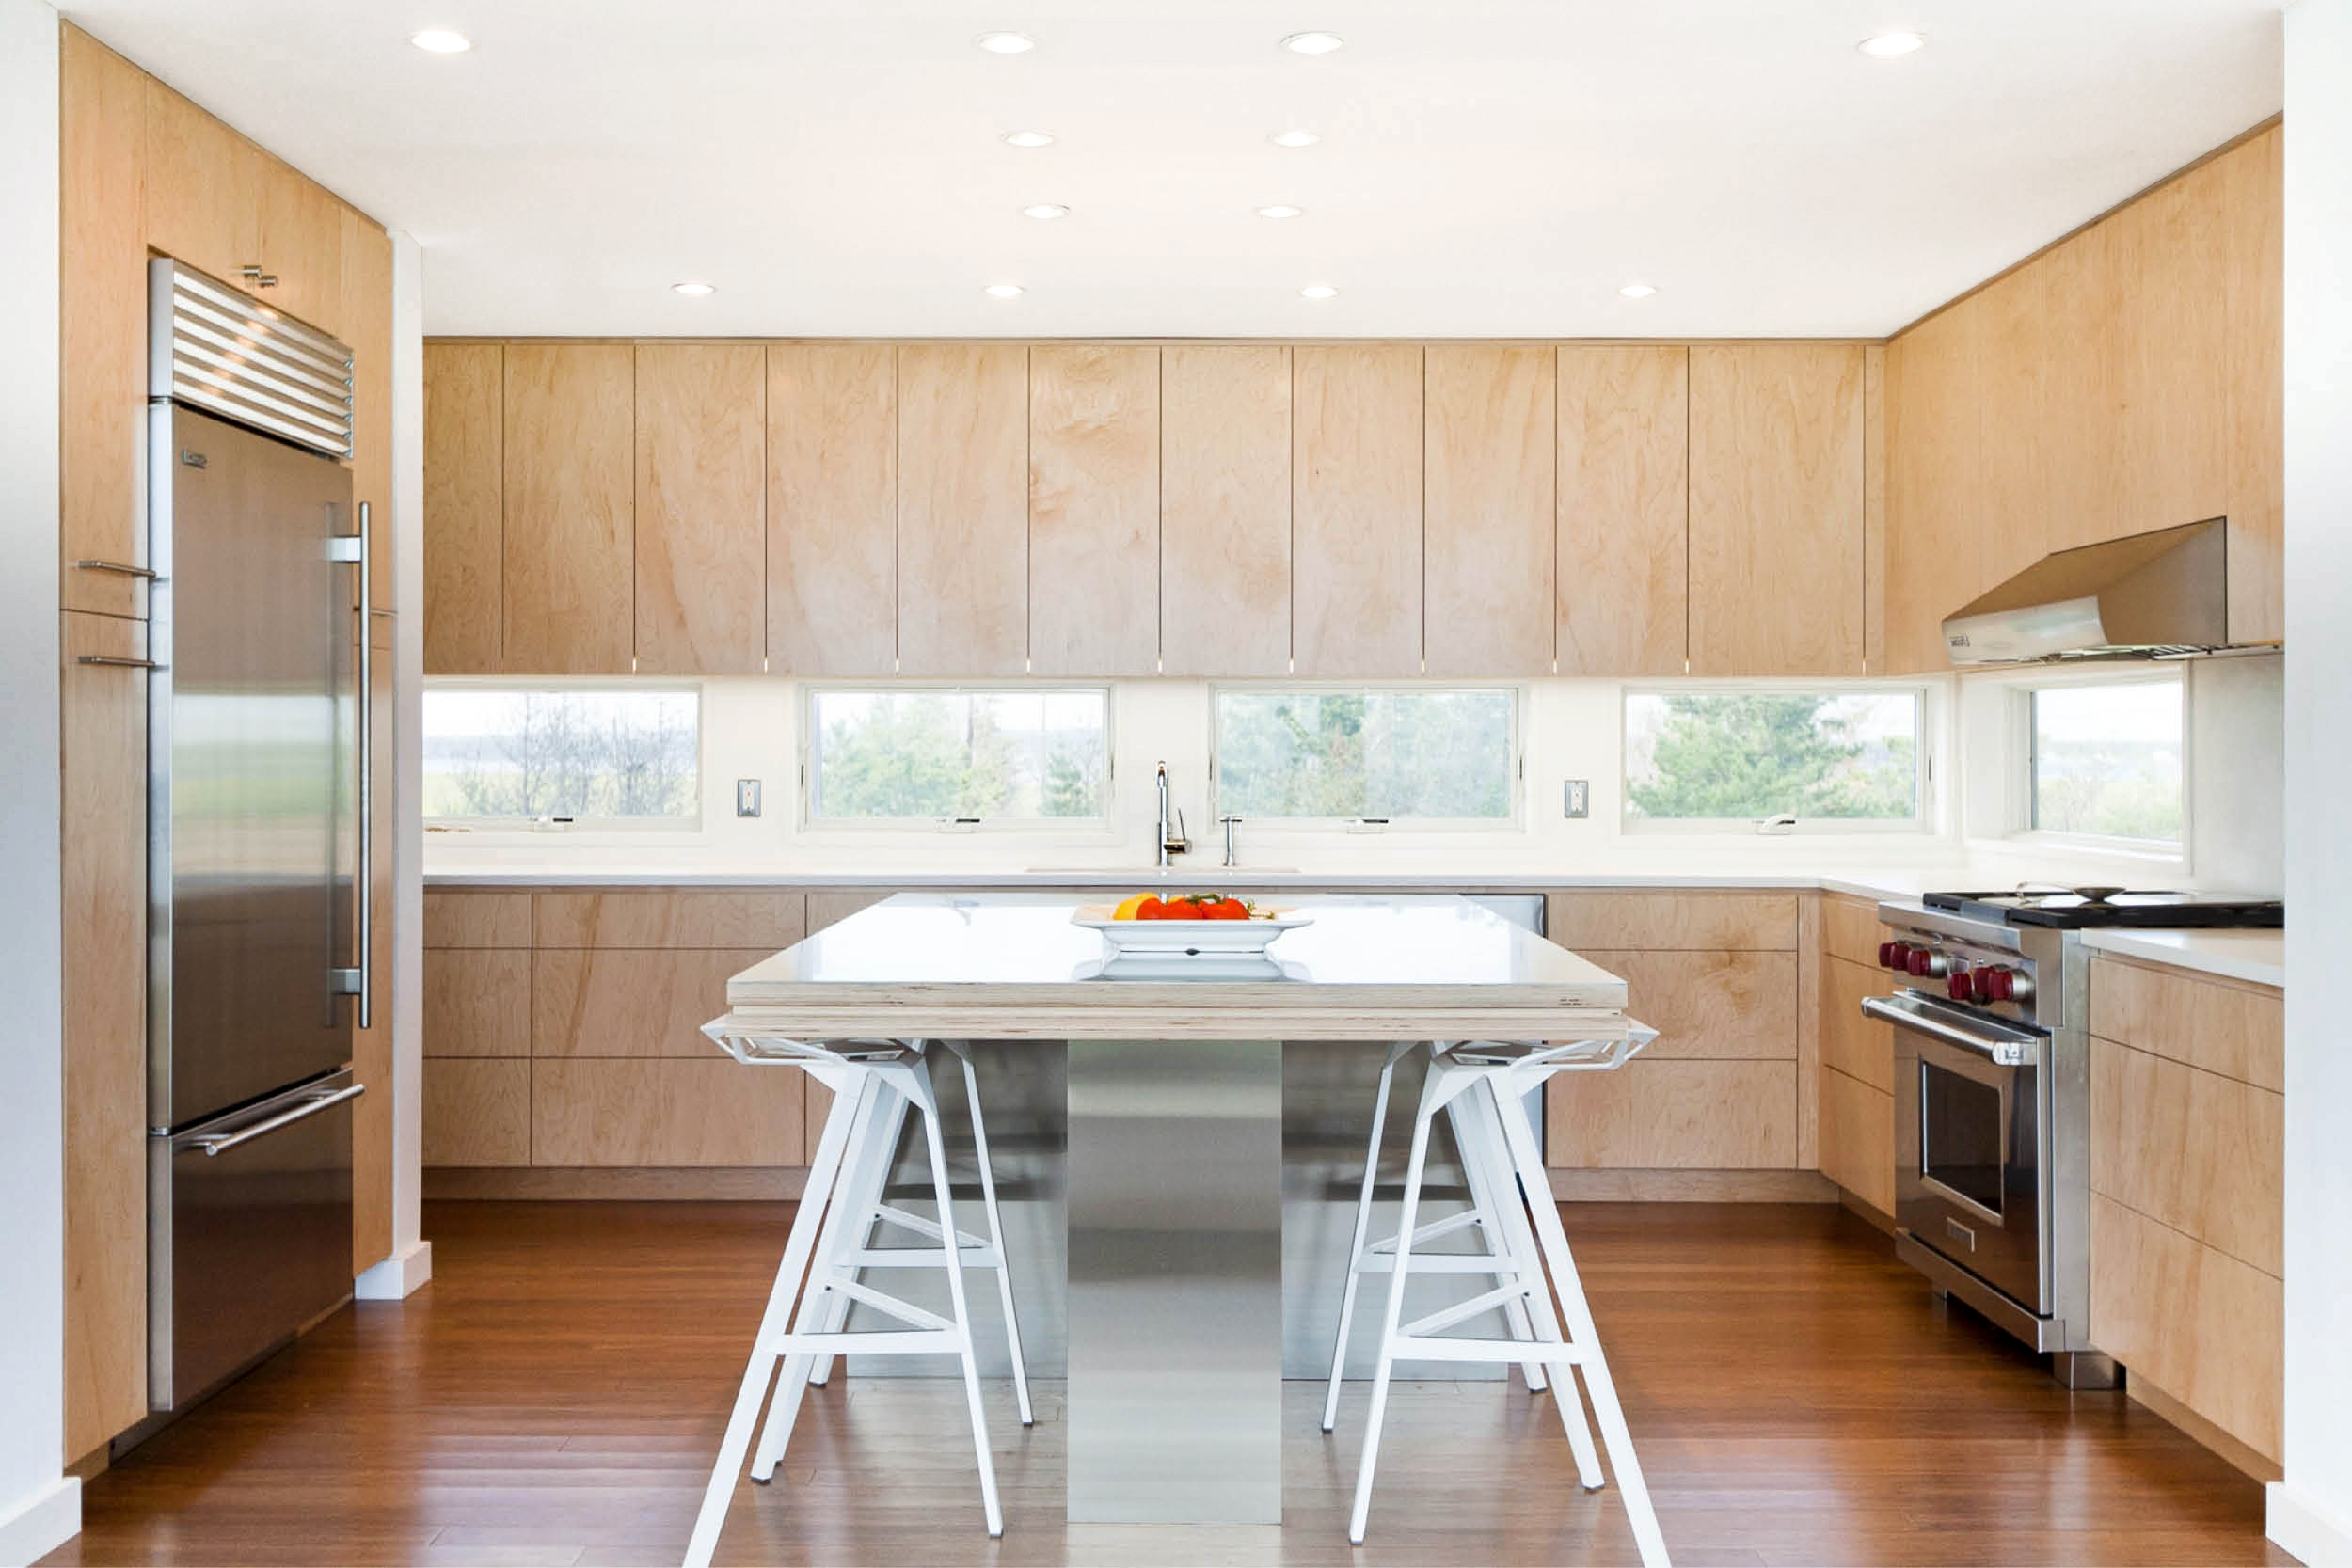 07-res4-resolution-4-architecture-modern-modular-home-prefab-dune-road-beach-house--interior-kitchen.jpg